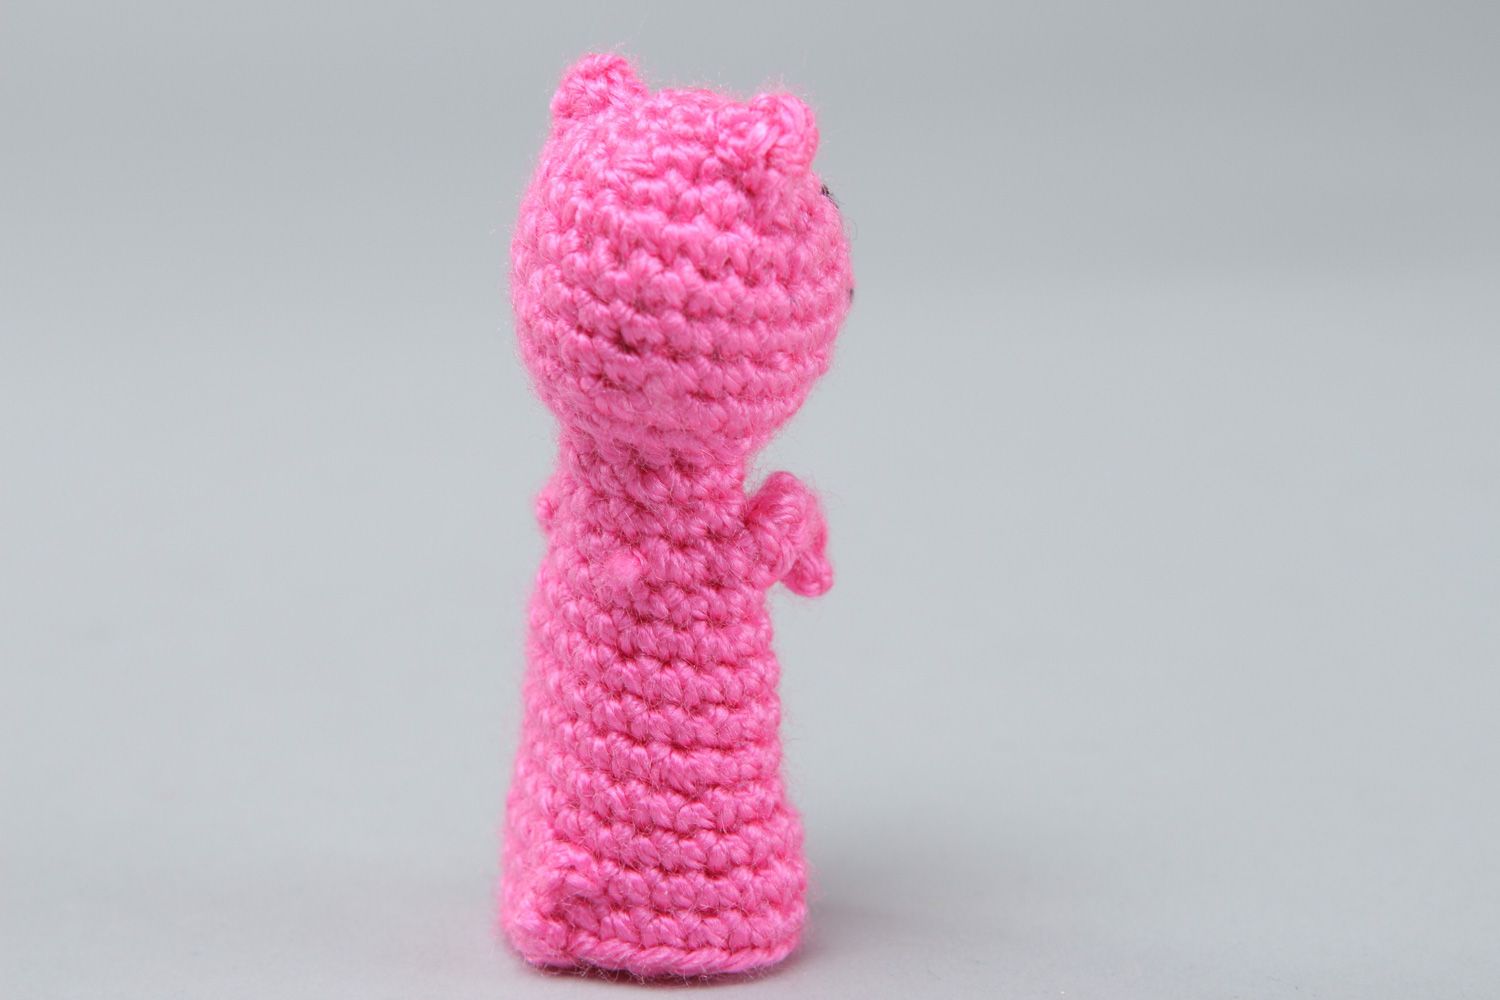 Пальчиковая игрушка свинка вязанная крючком детская розовая фото 2